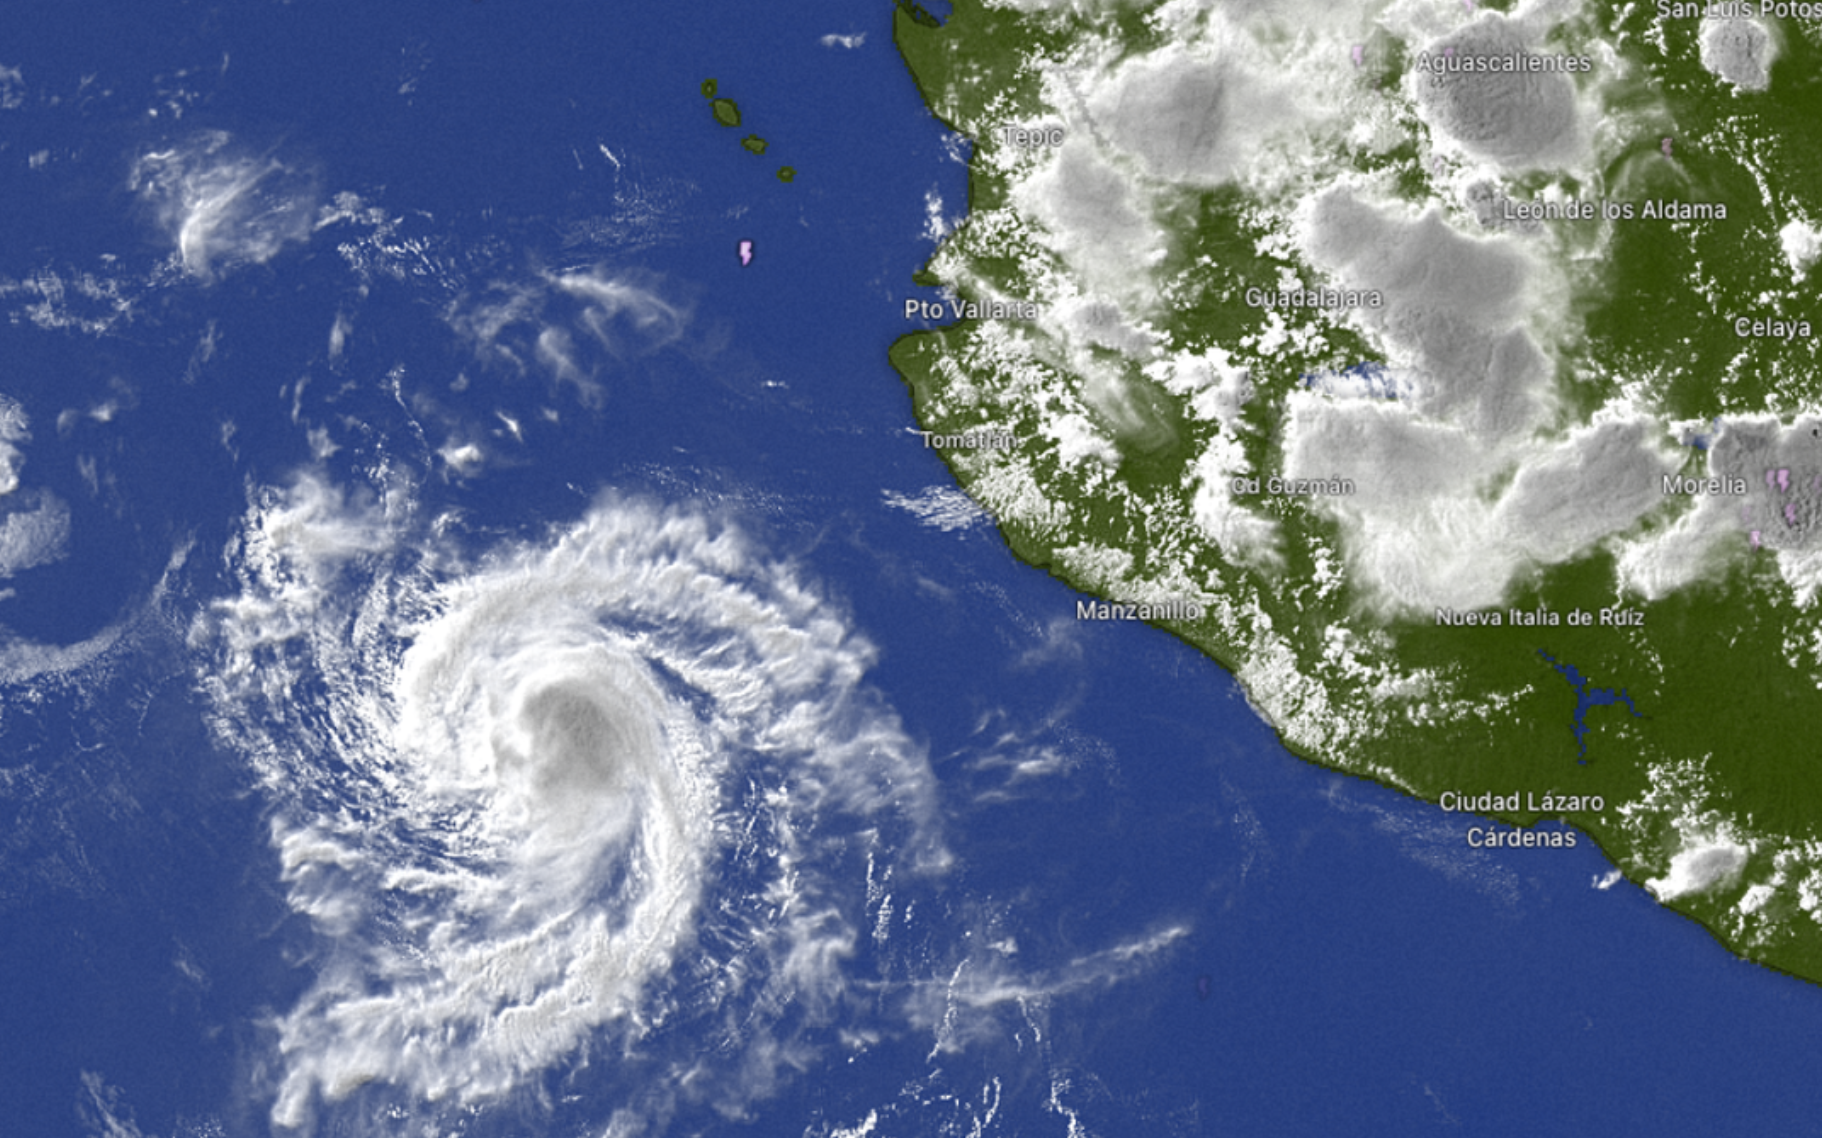 Tormenta tropical “Aletta” se forma frente a costa de Jalisco